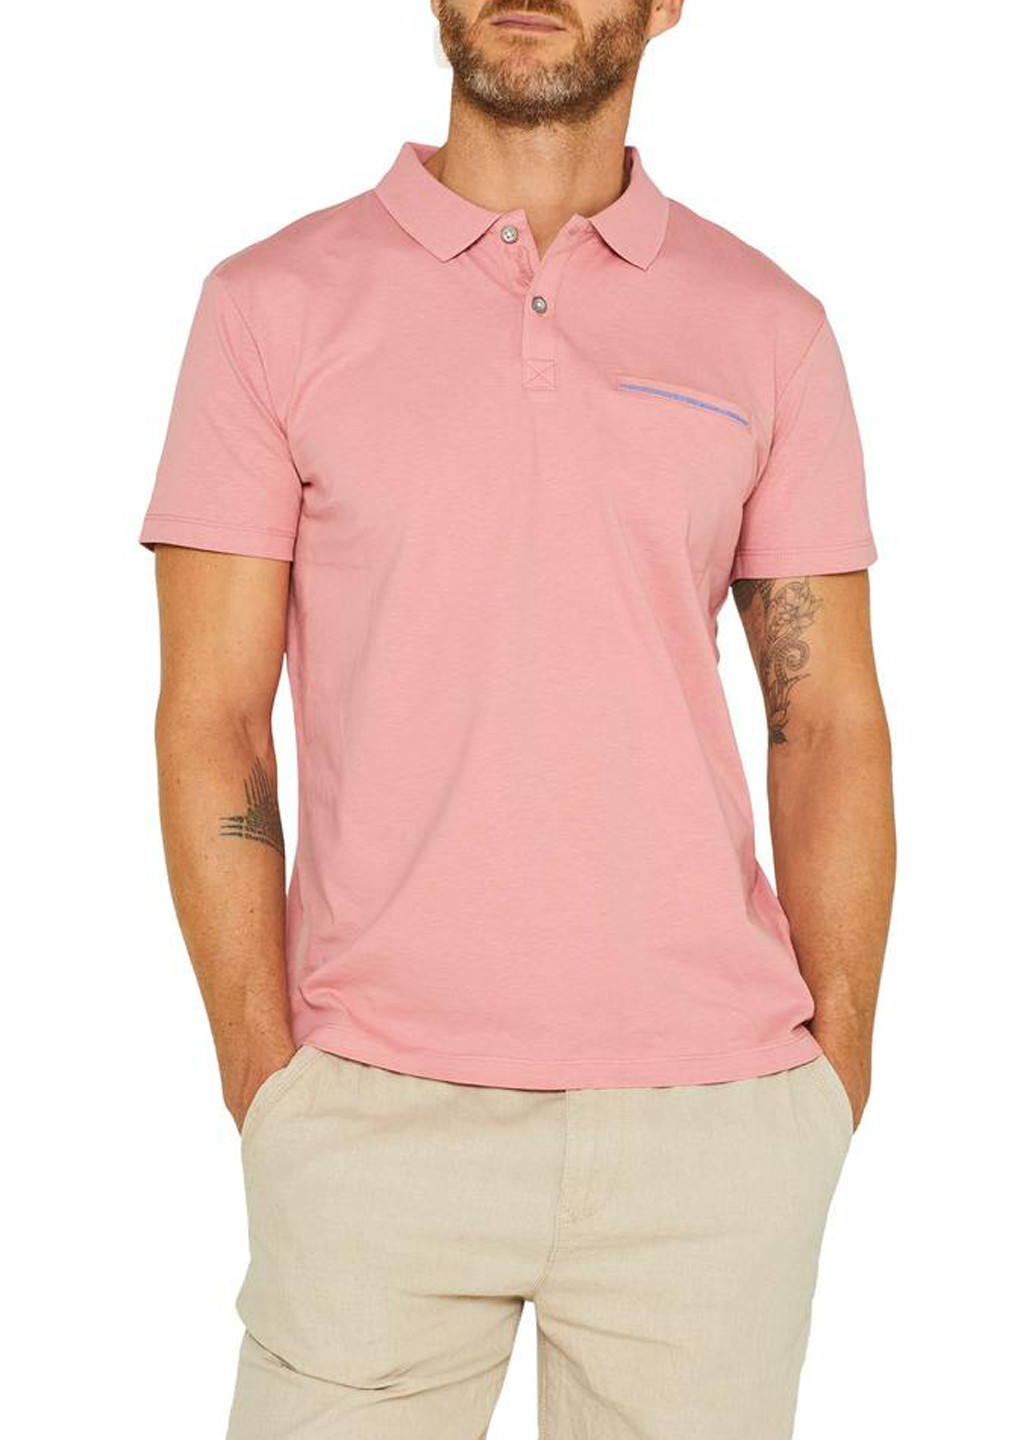 Розовая футболка-поло для мужчин Esprit однотонная